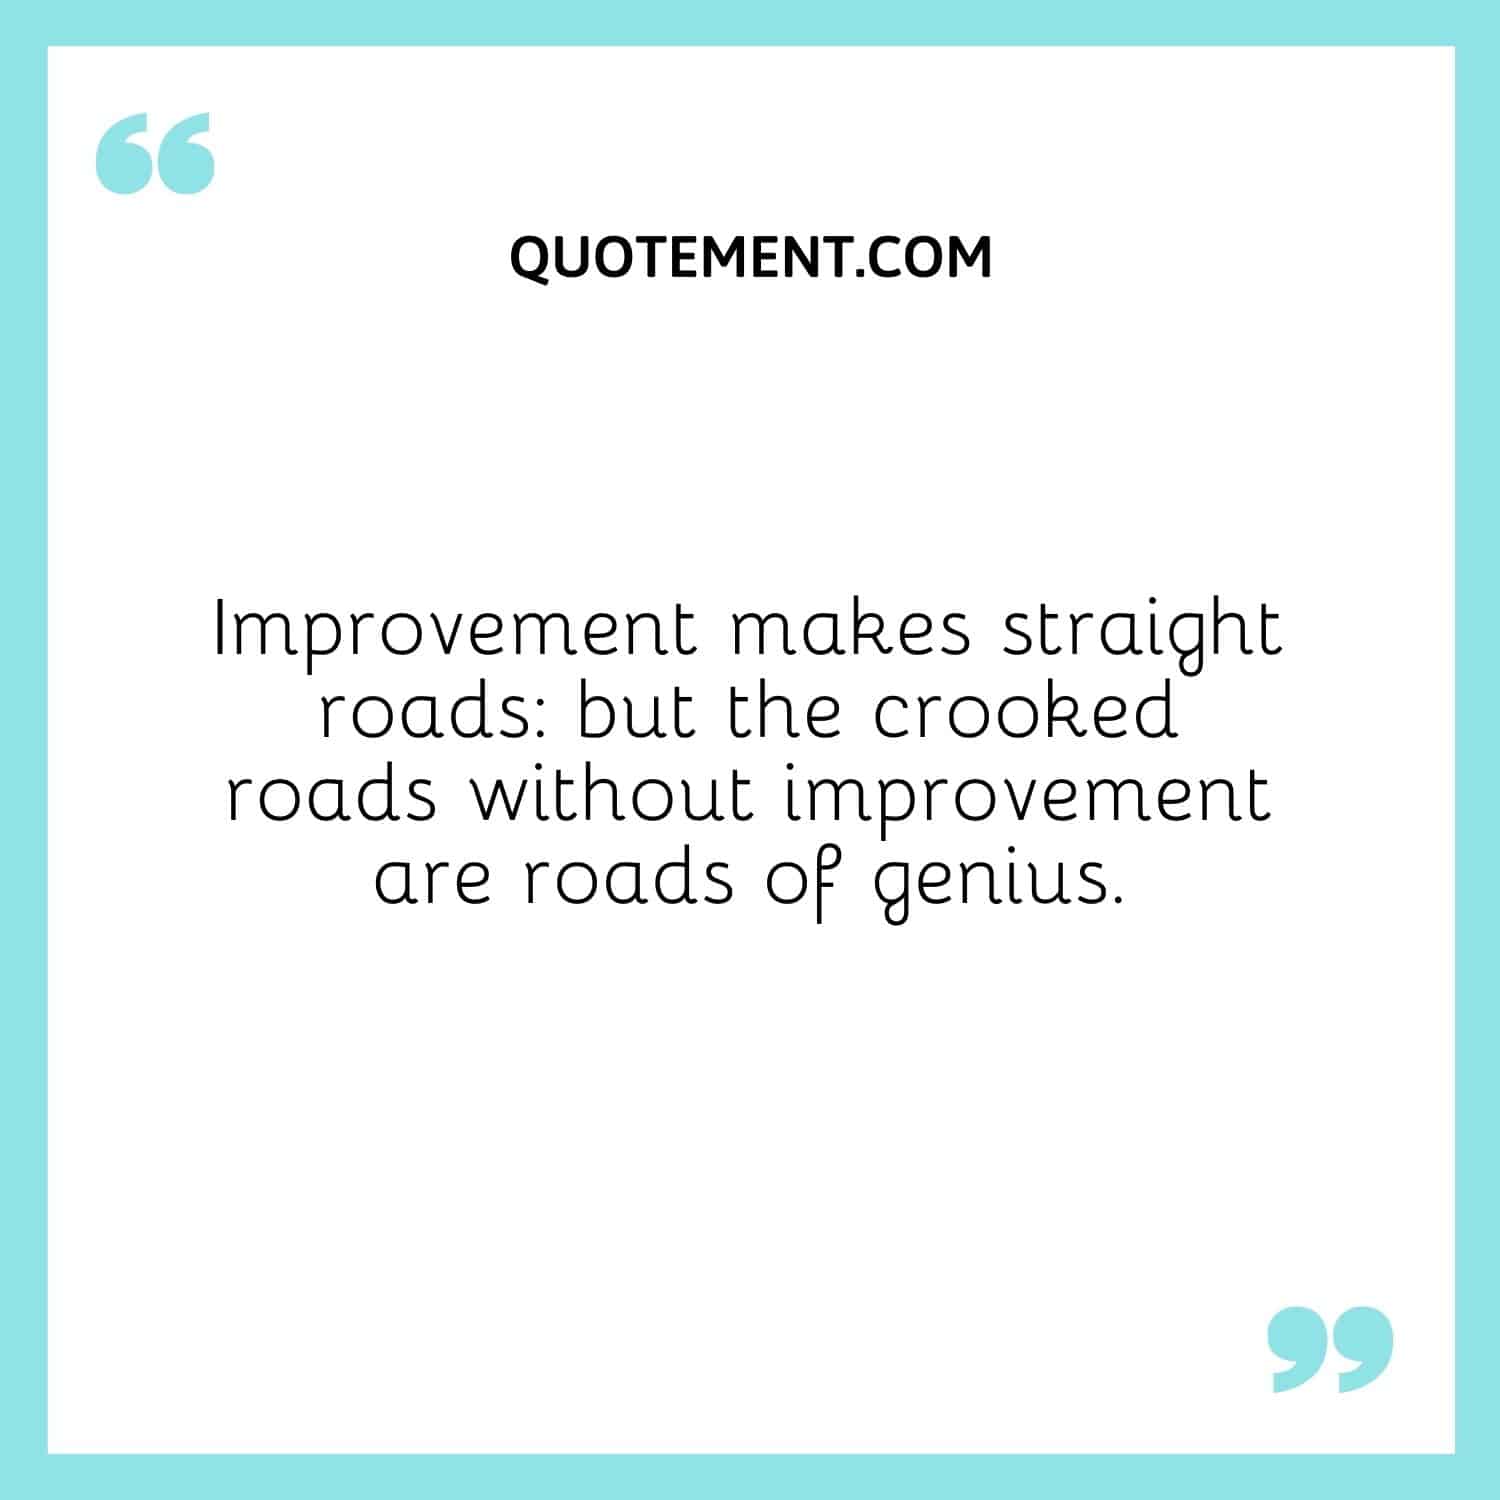 La mejora hace caminos rectos, pero los caminos torcidos sin mejora son caminos de genio.